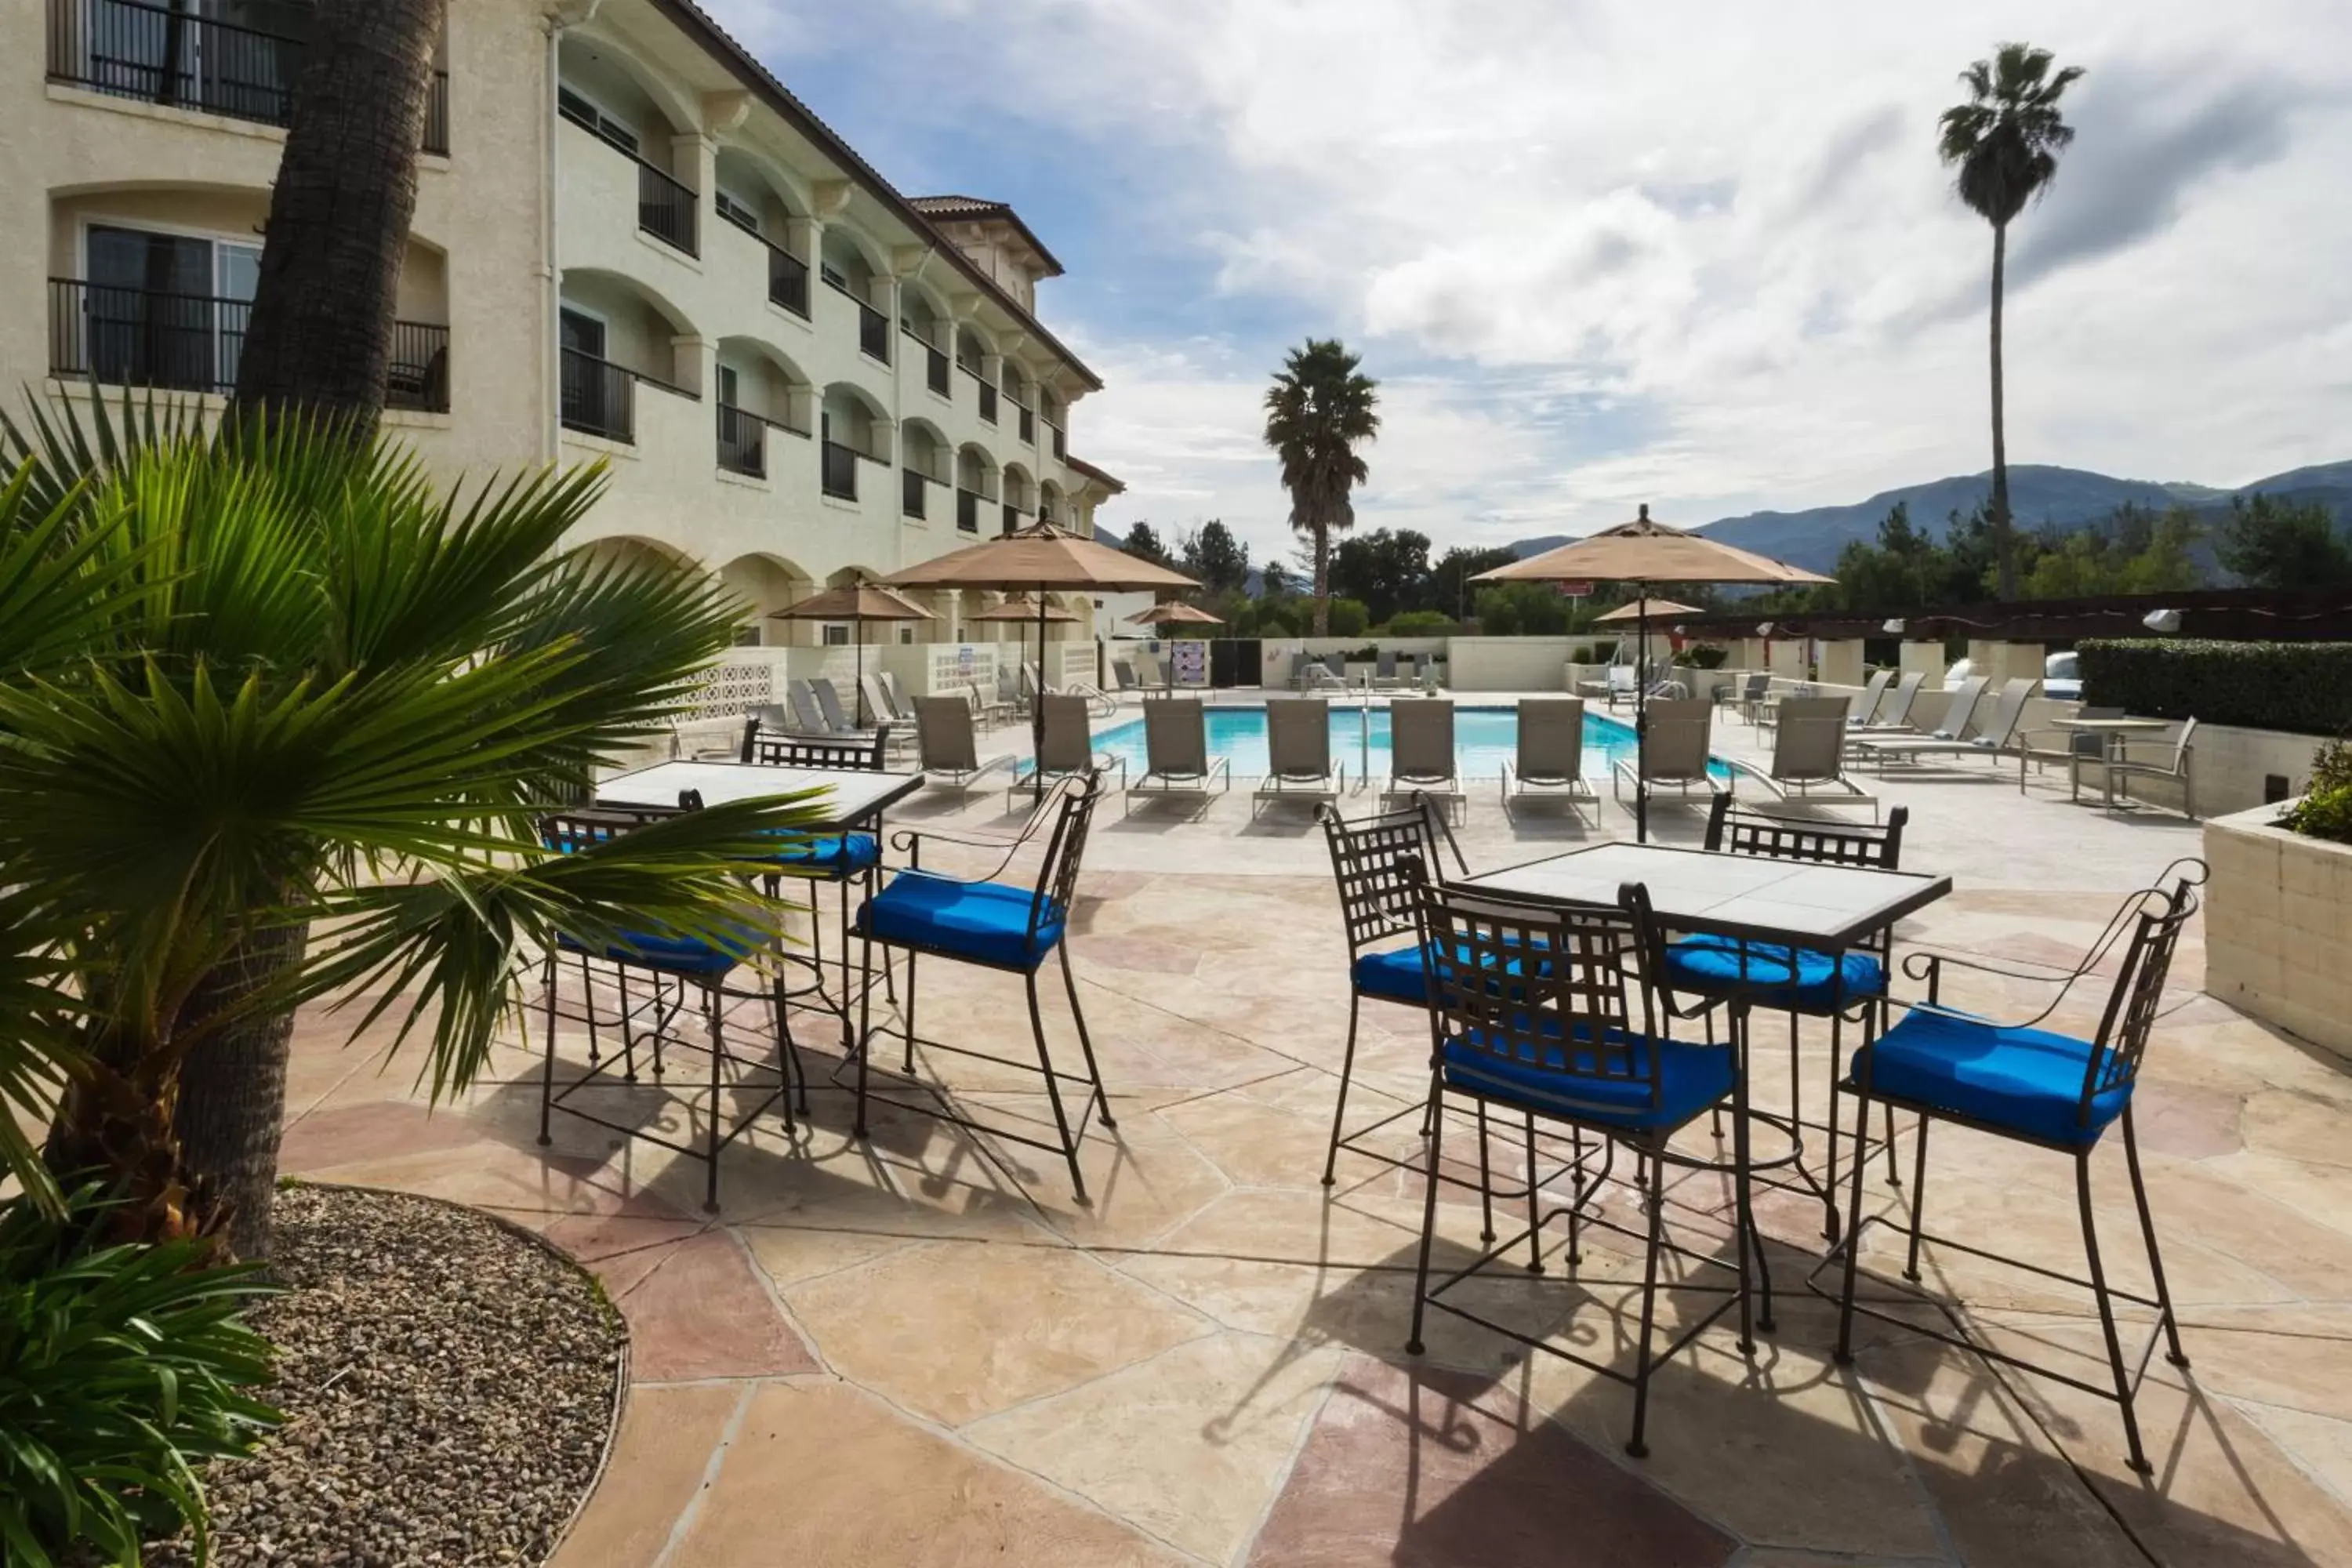 Swimming pool, Pool View in Santa Ynez Valley Marriott